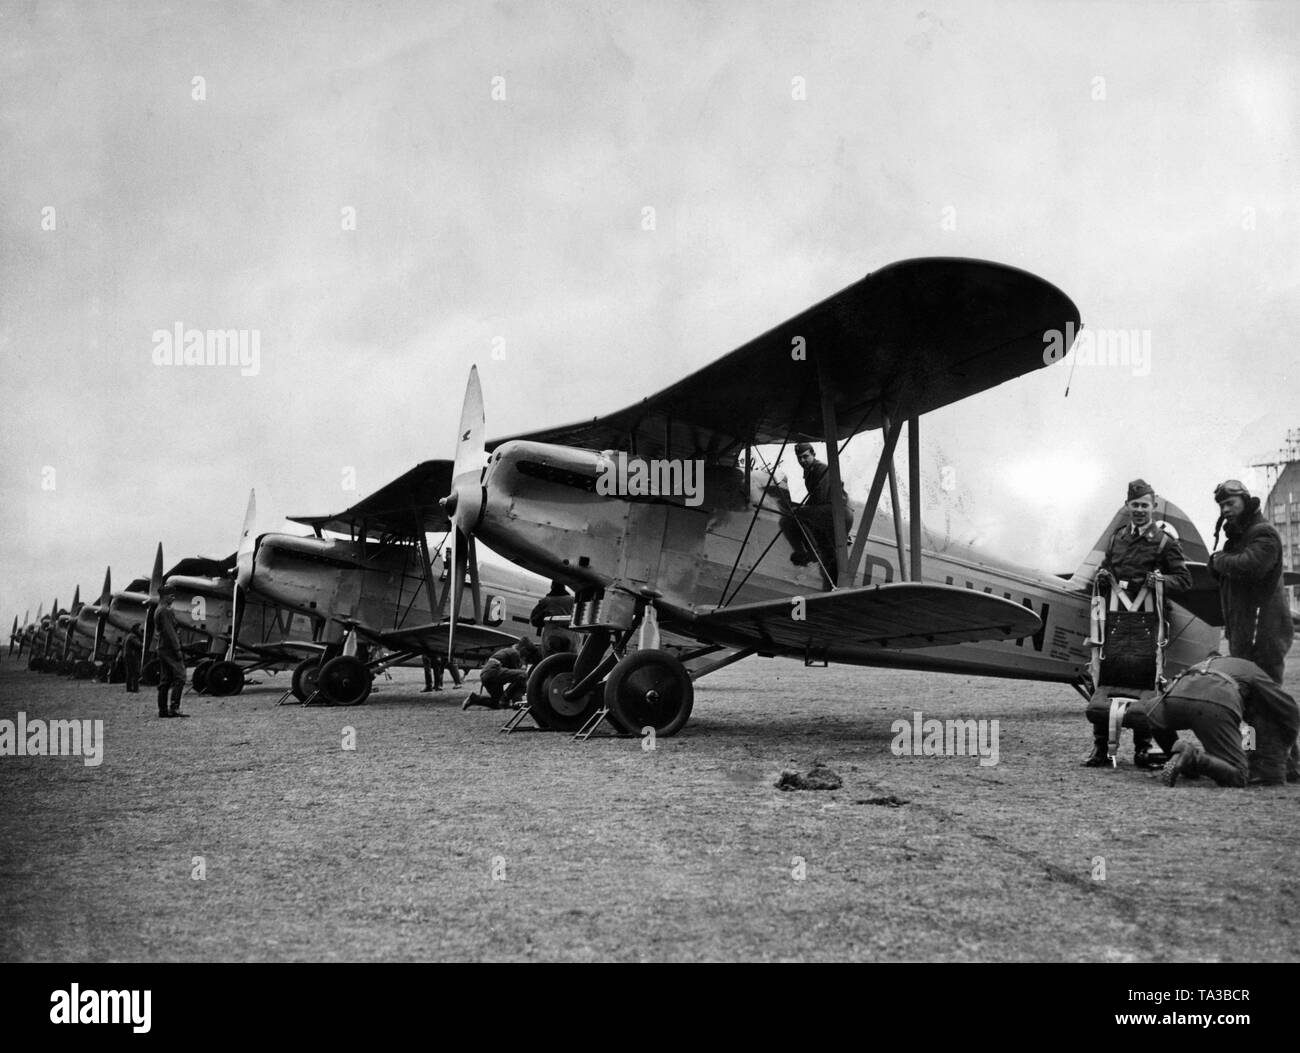 Das Bild zeigt Kampfflugzeugen der Deutschen Luftwaffe an einem Flughafen, sind diese Flugzeuge vom Typ Arado Ar 65, ein doppeldecker als Jagdflugzeug entwickelt wurde. Die Modelle der Serie wurden in großem Umfang die Luftwaffe (1935 gegründet) der Wehrmacht eingeführt. Stockfoto